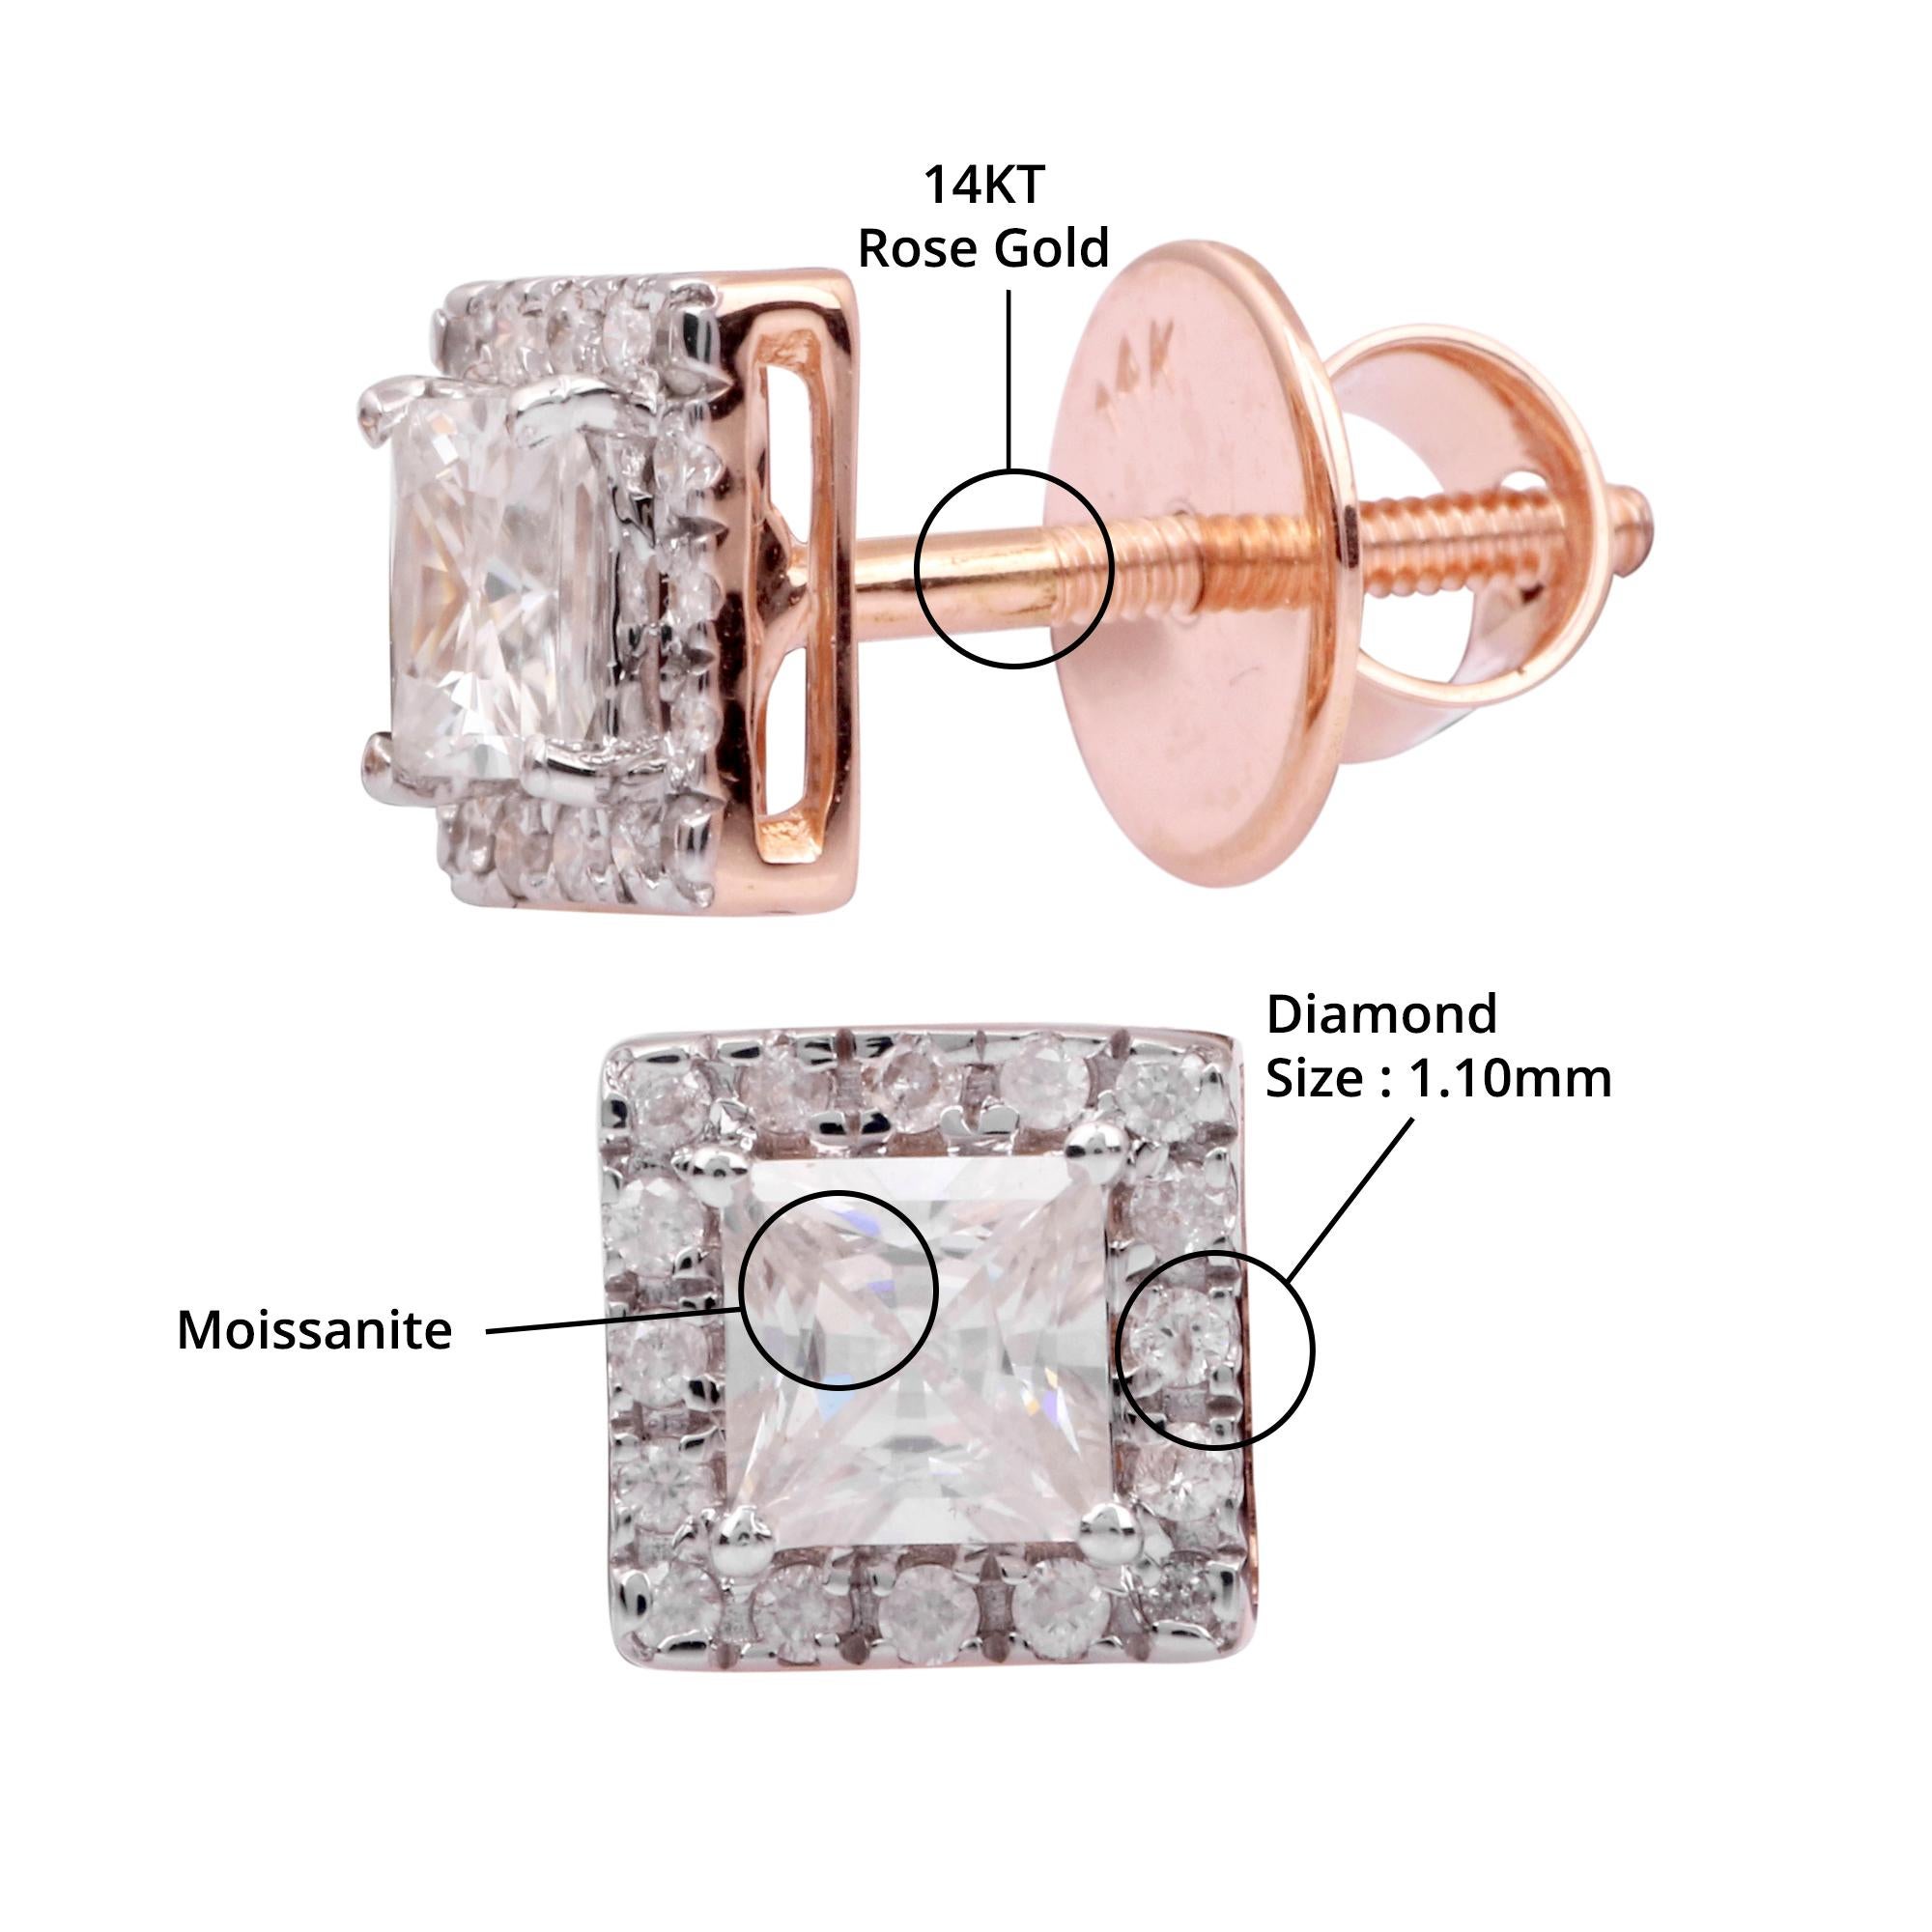 Einzelheiten zum Artikel:-

✦ SKU:- JER00711RRR

✦ MATERIAL :- Gold

✦ Metallreinheit : 14K Rose Gold 

✦ Edelstein-Spezifikation:-
✧ Klarer Diamant (l1/HI) Rund - 1,10 mm - 32 Stück
✧ Klarer Prinzess-Moissanit (VVS/DE) - 2 Stück


✦ Ungefähr.